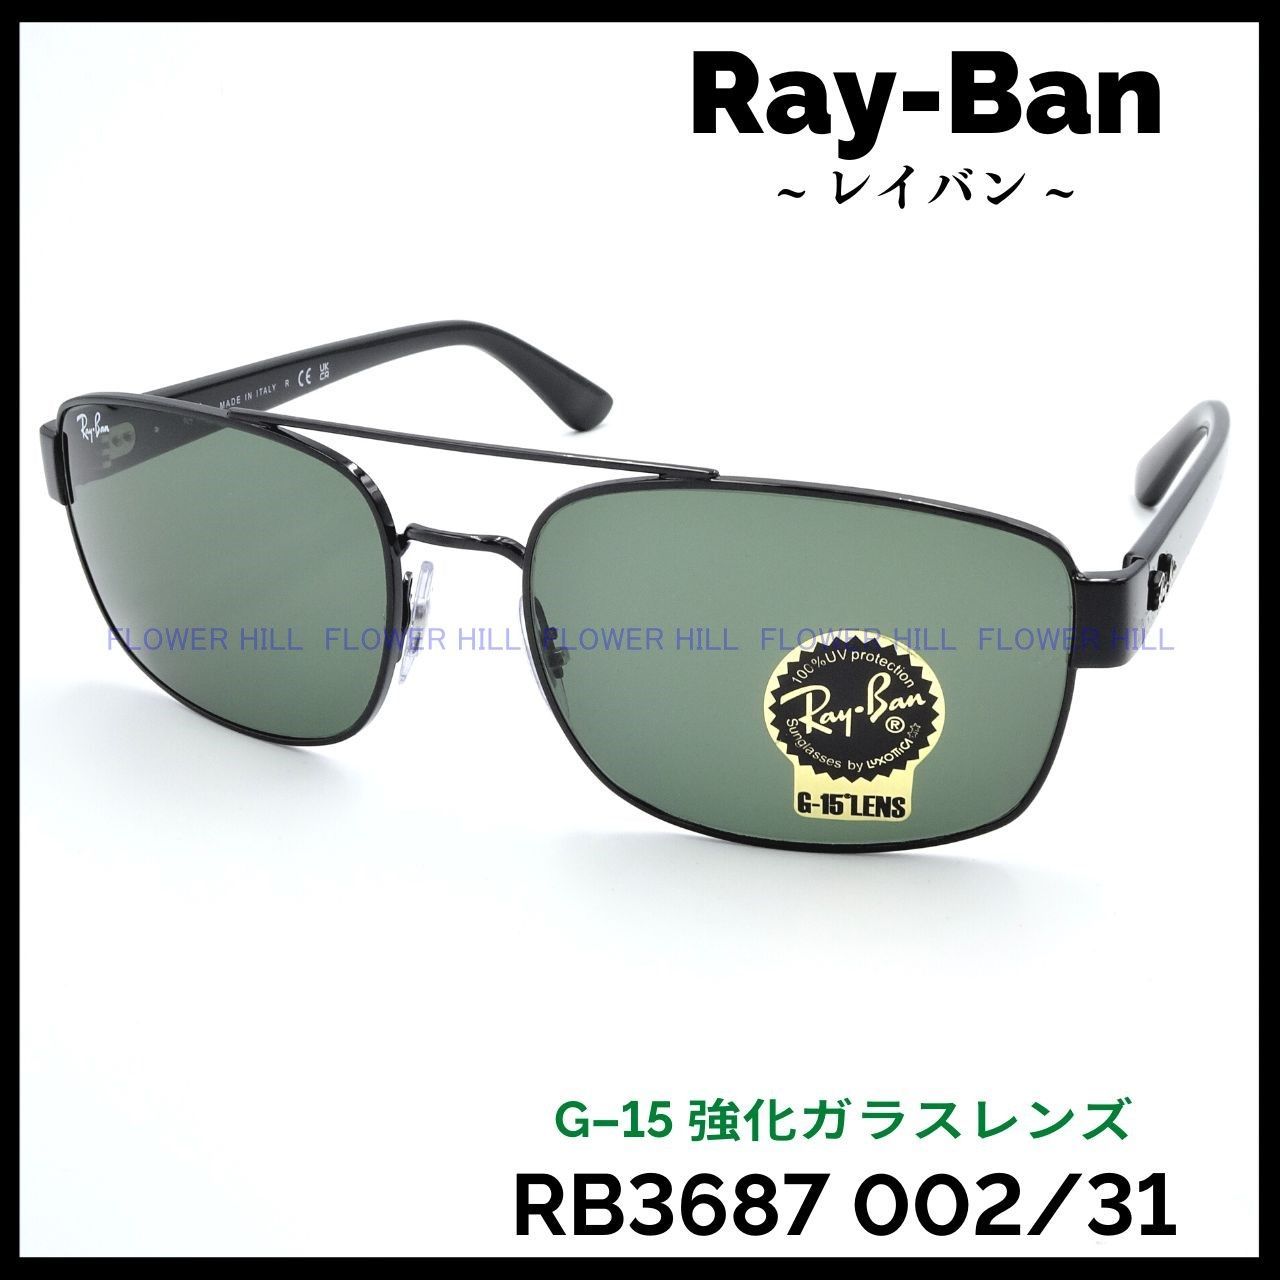 RAY-BAN レイバン サングラス RB3687 002/31 58サイズ BLACK / G